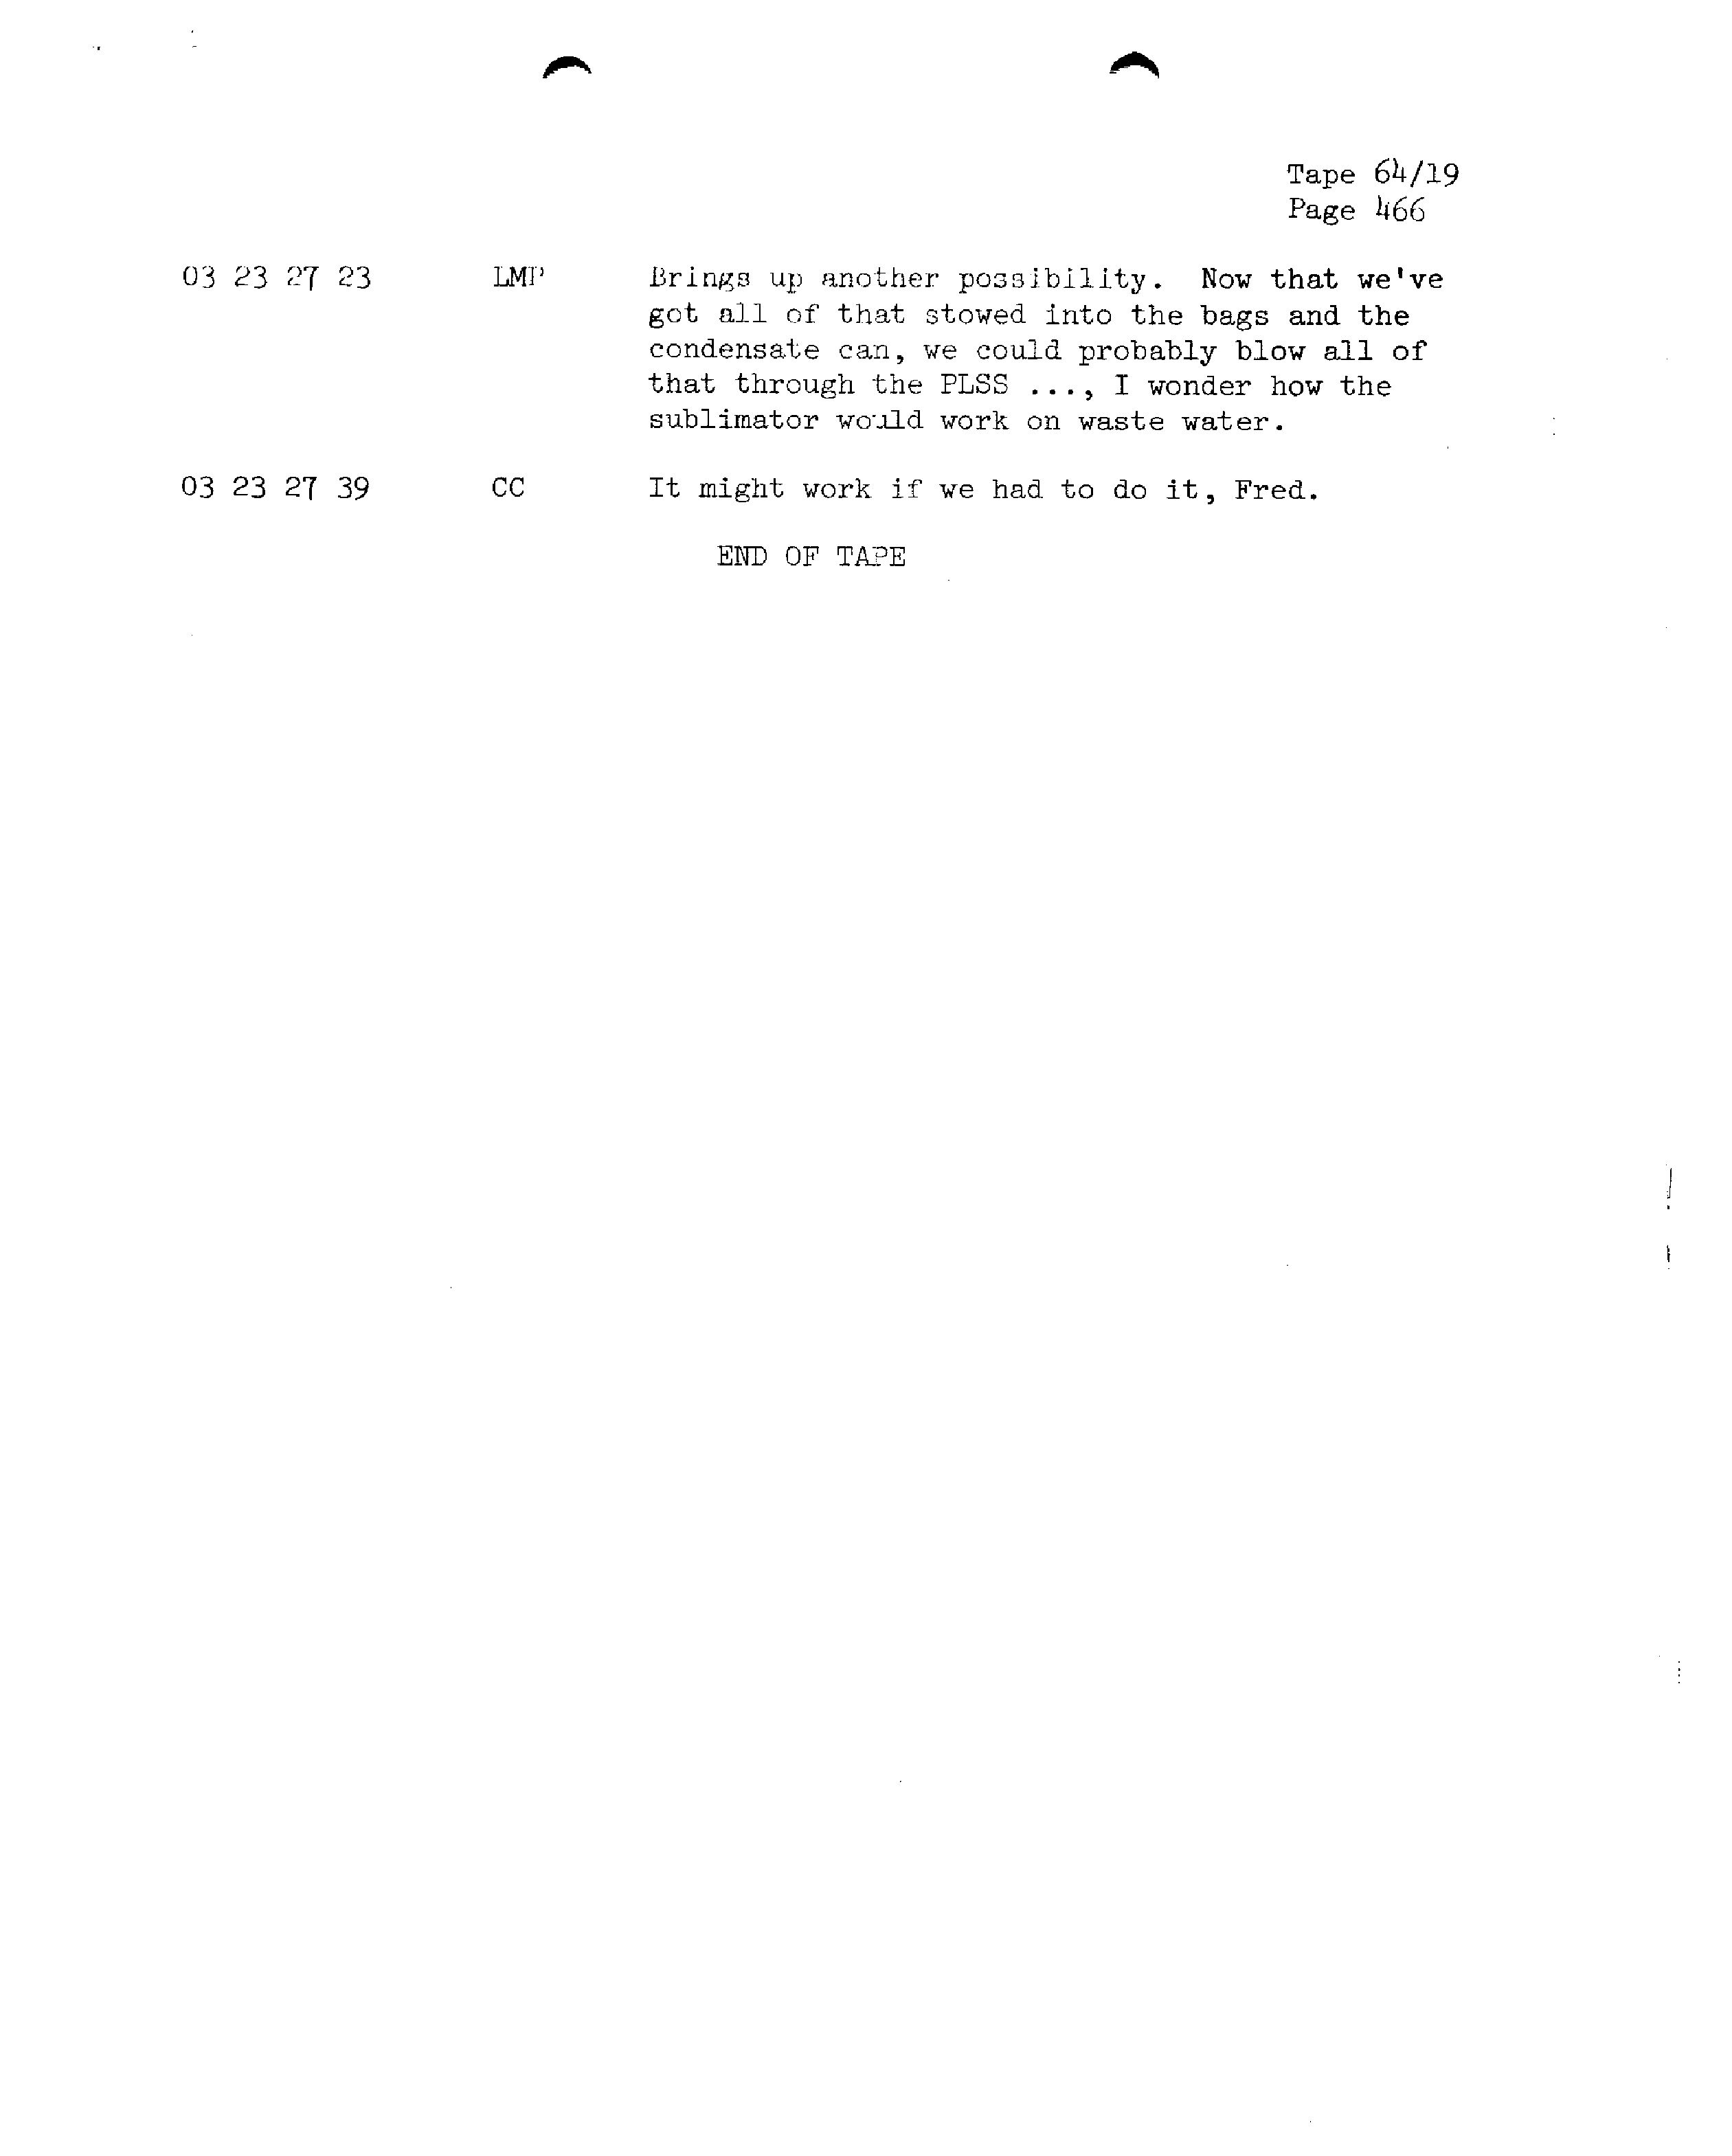 Page 473 of Apollo 13’s original transcript